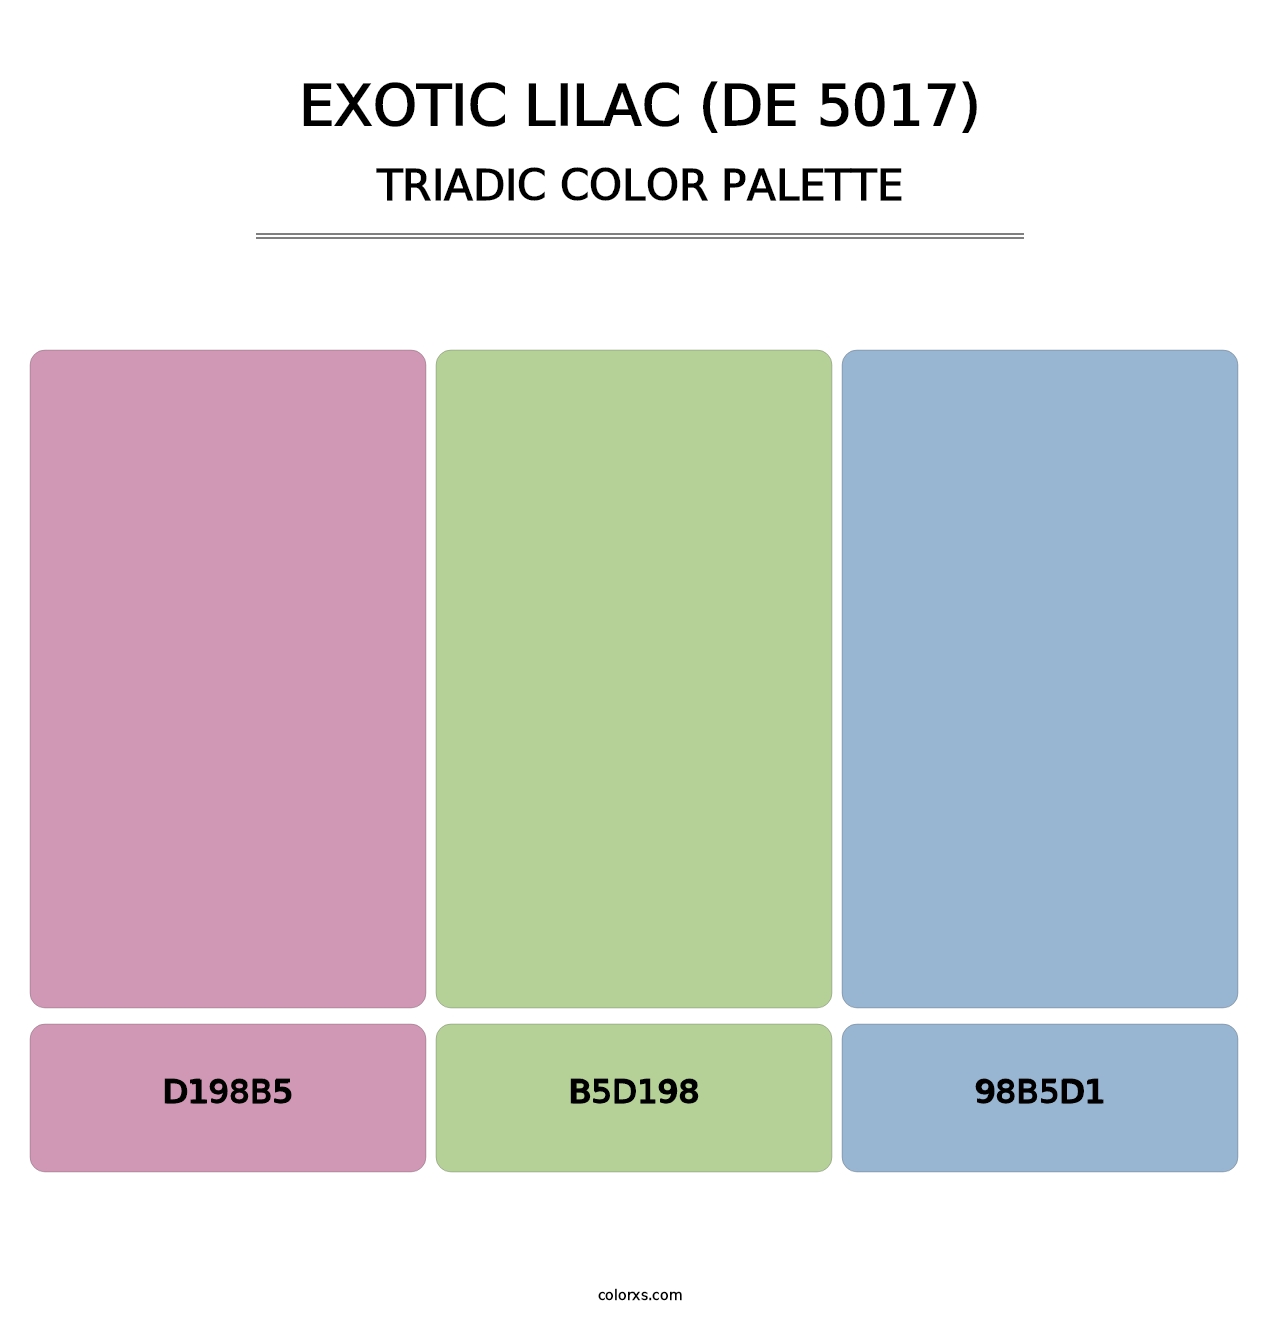 Exotic Lilac (DE 5017) - Triadic Color Palette